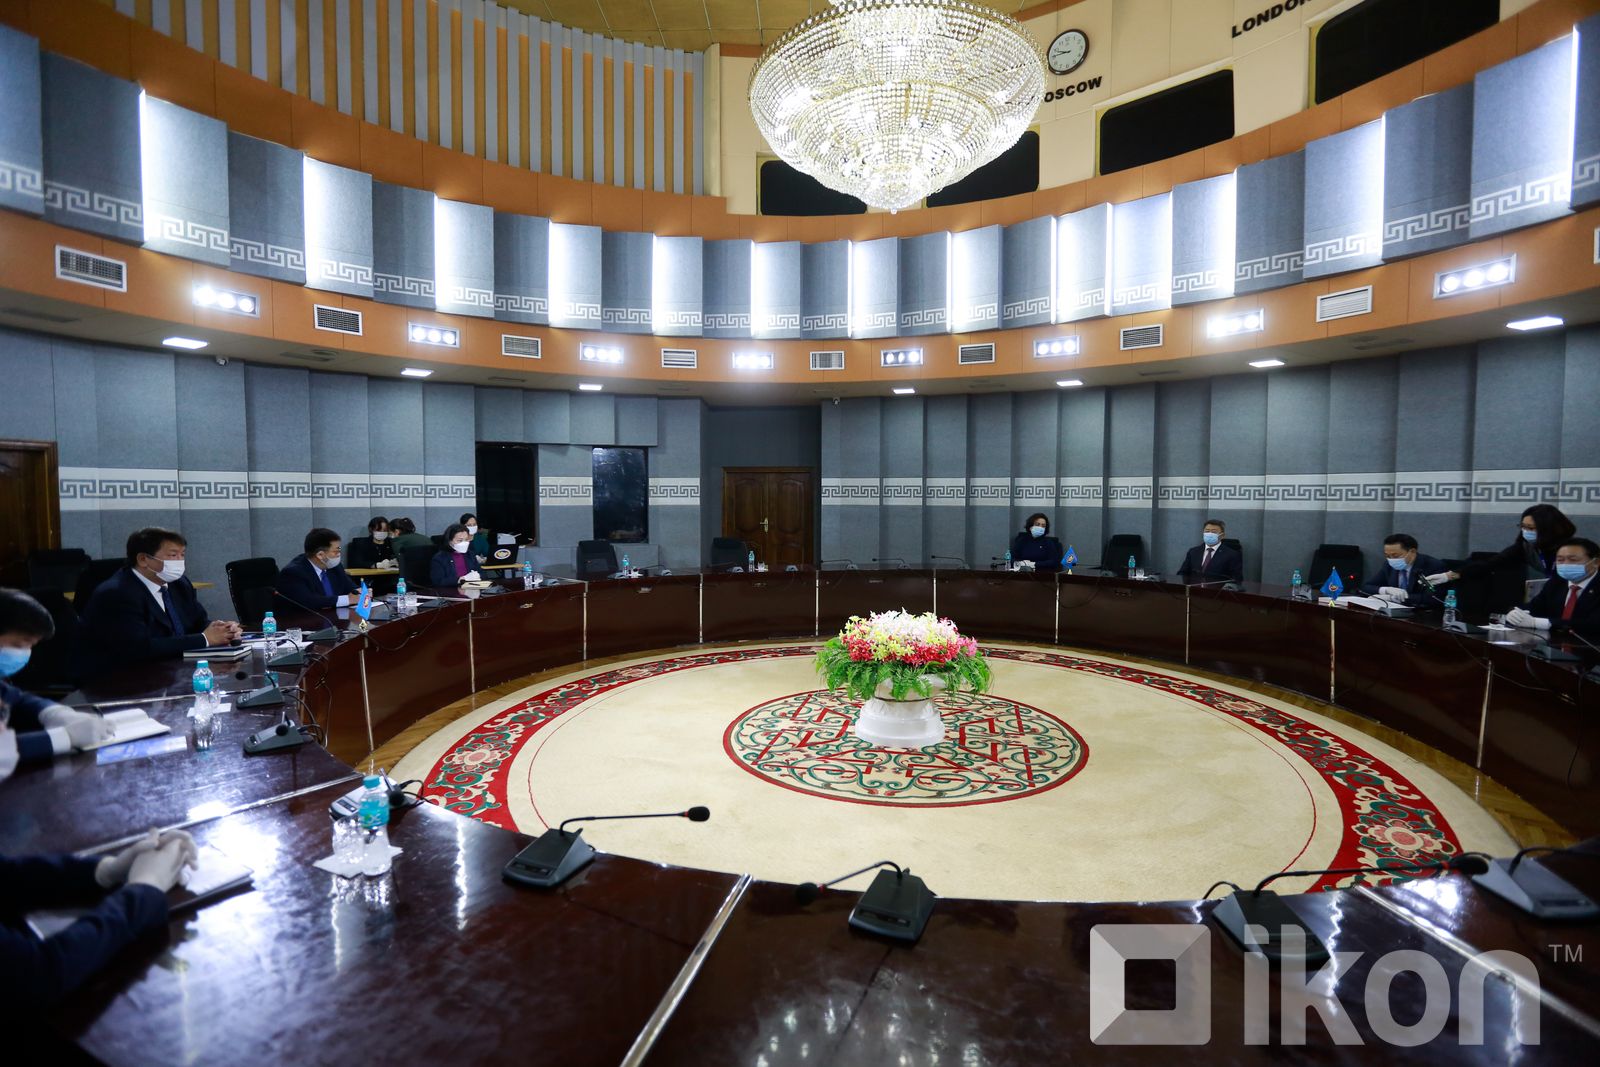 몽골인민당 U.Khurelsukh 대표의 대통령 선거 후보자 서류를 중앙선거관리위원회에 접수하여.jpg